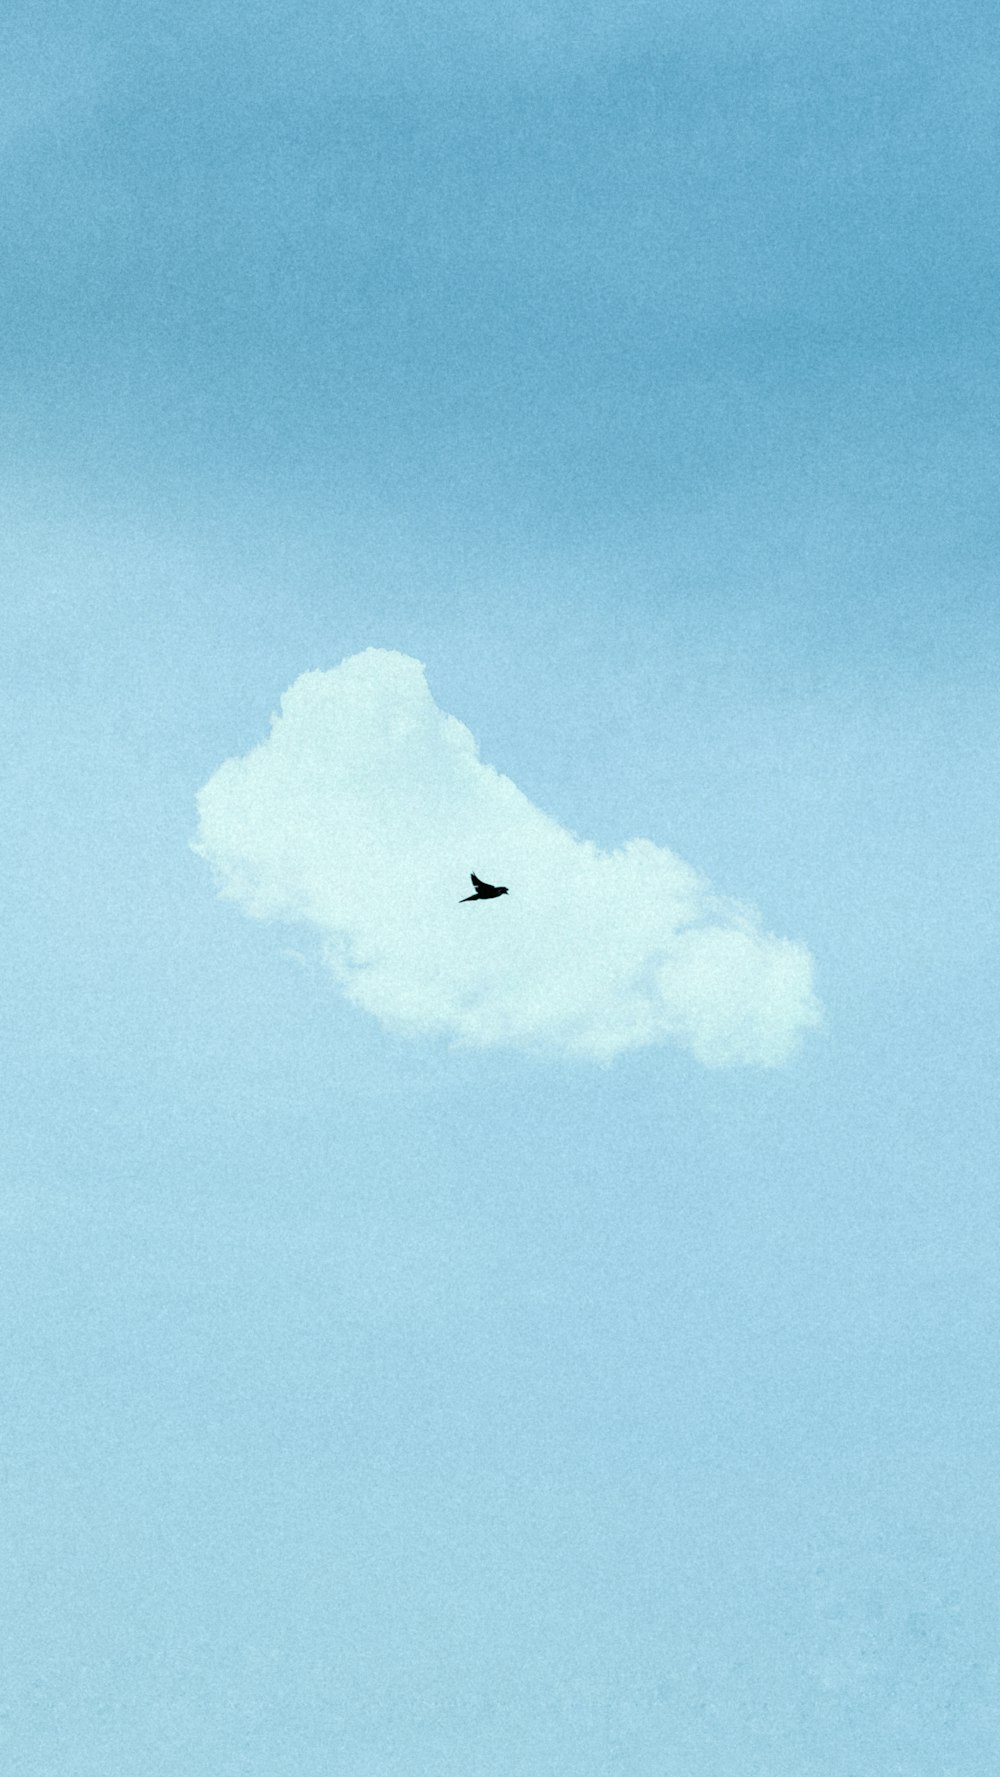 uccello nero che vola sotto il cielo blu durante il giorno